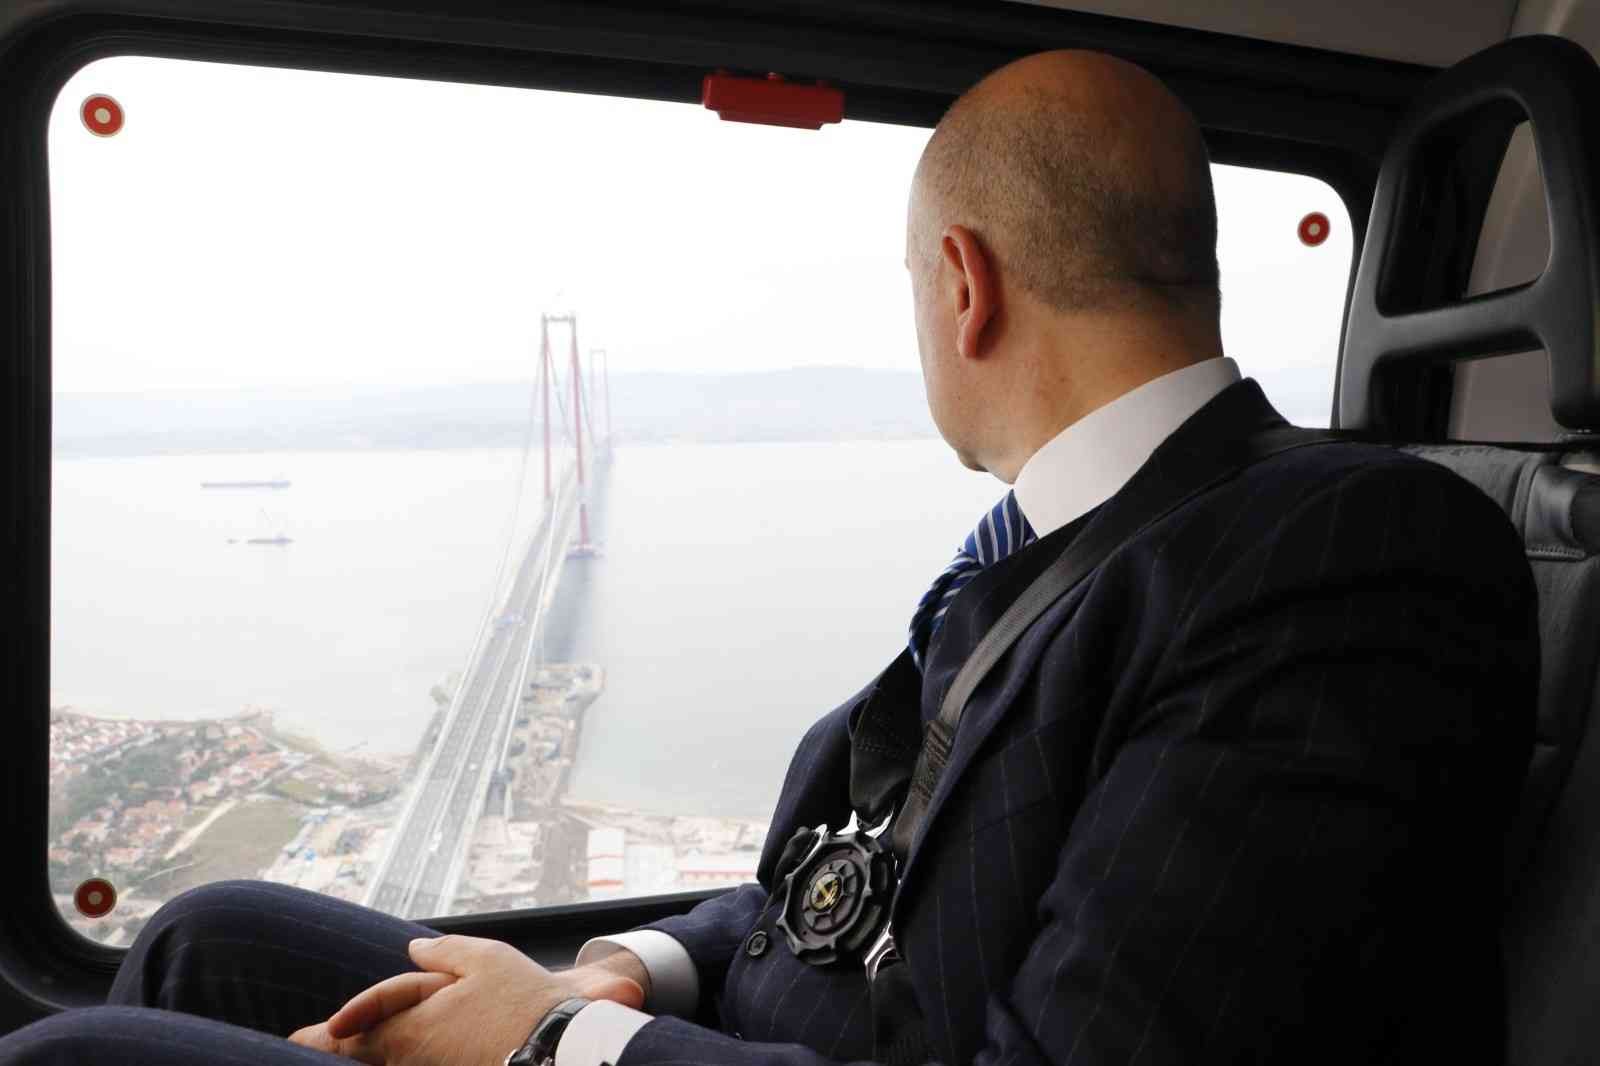 Cumhurbaşkanı Recep Tayyip Erdoğan’ın katılımı ile 18 Mart Cuma günü gerçekleşecek olan 1915 Çanakkale Köprüsü açılışı için gelen Ulaştırma ve ...